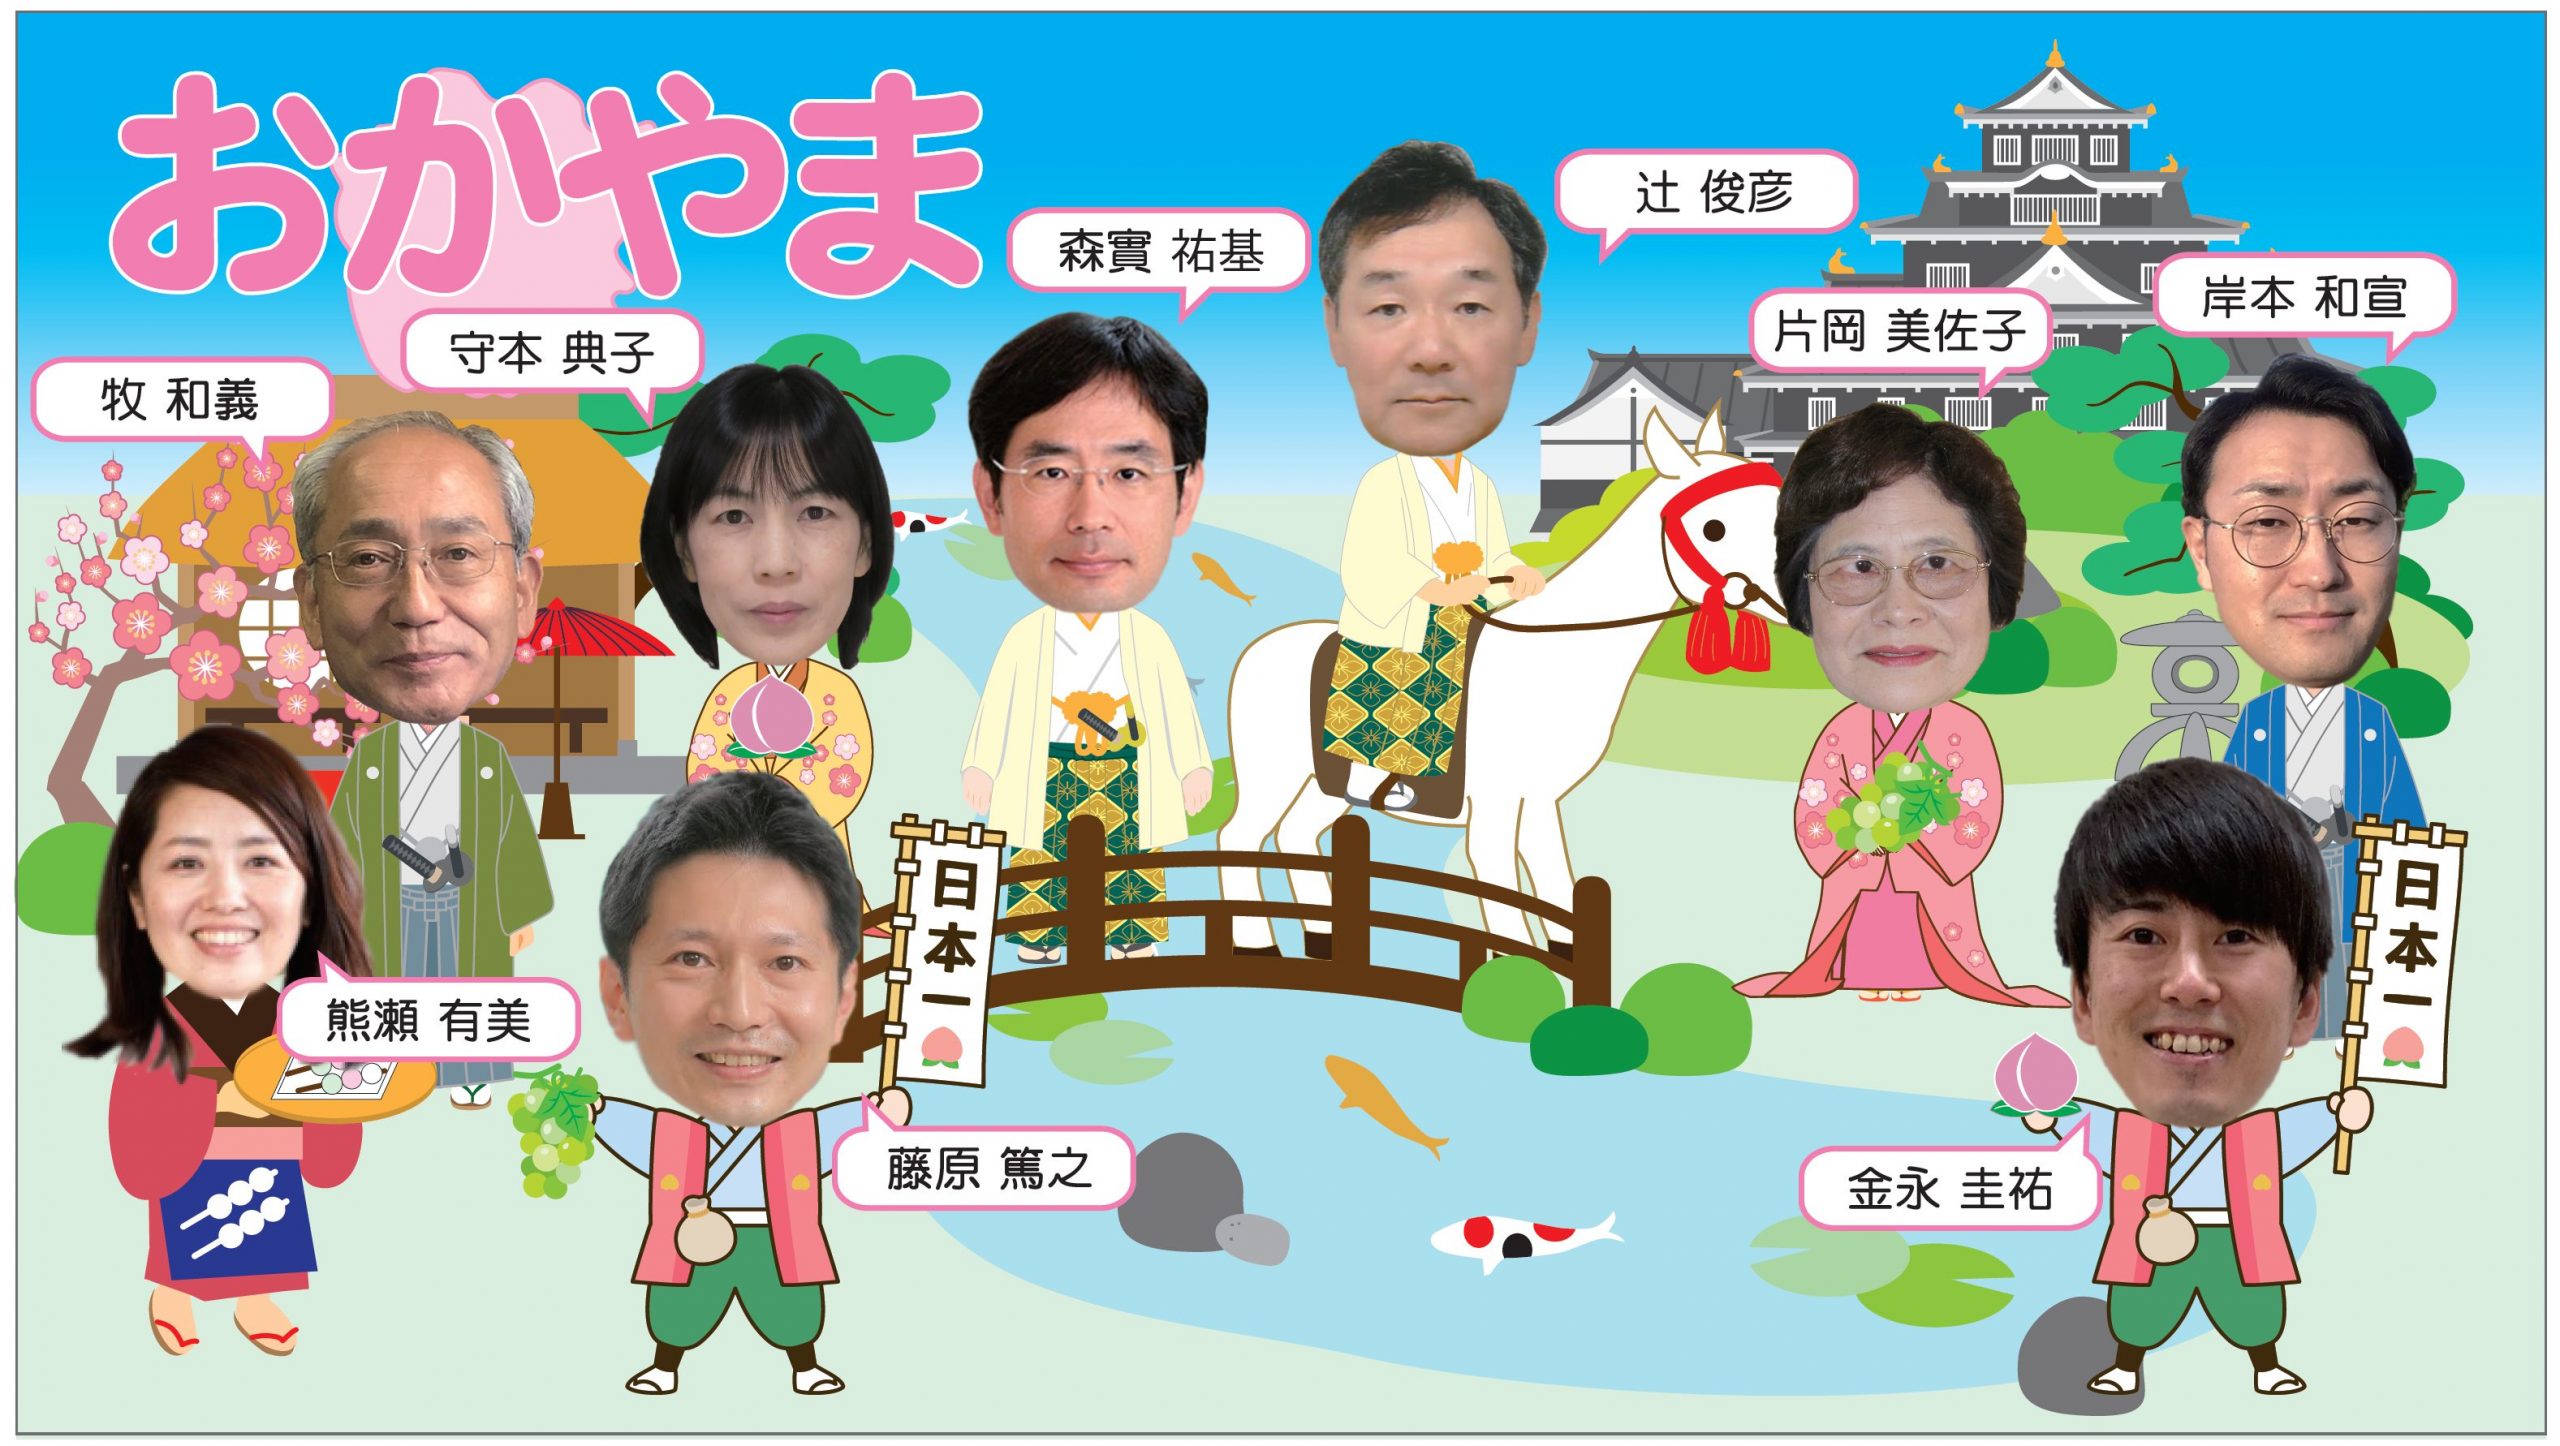 実行委員を代表した岡山メンバーの歓迎写真